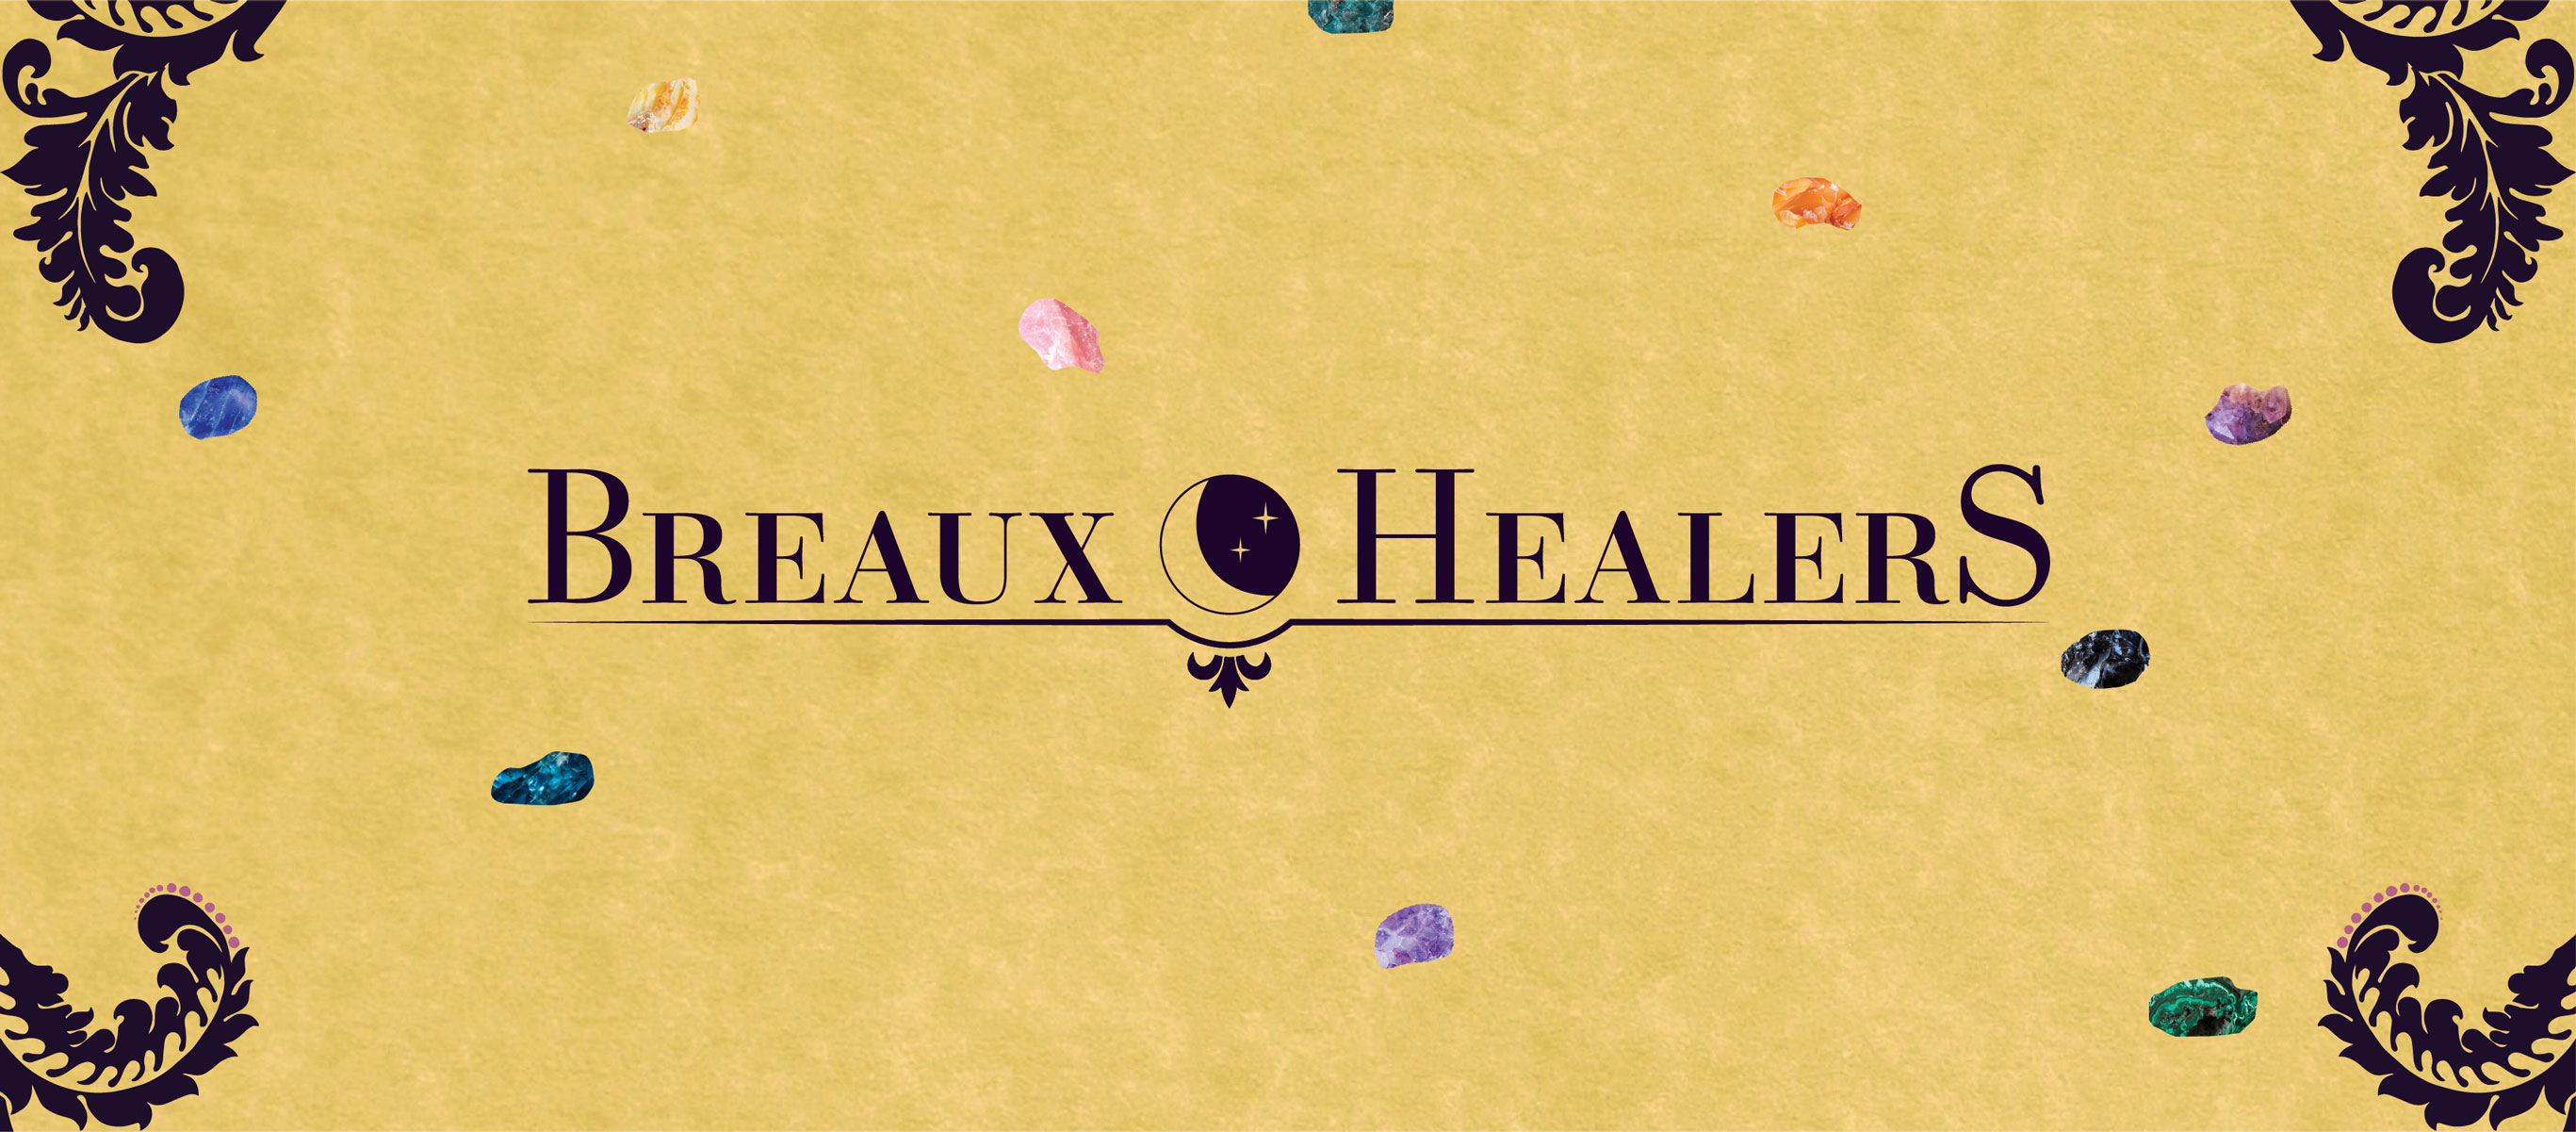 Breaux Healers social media icon